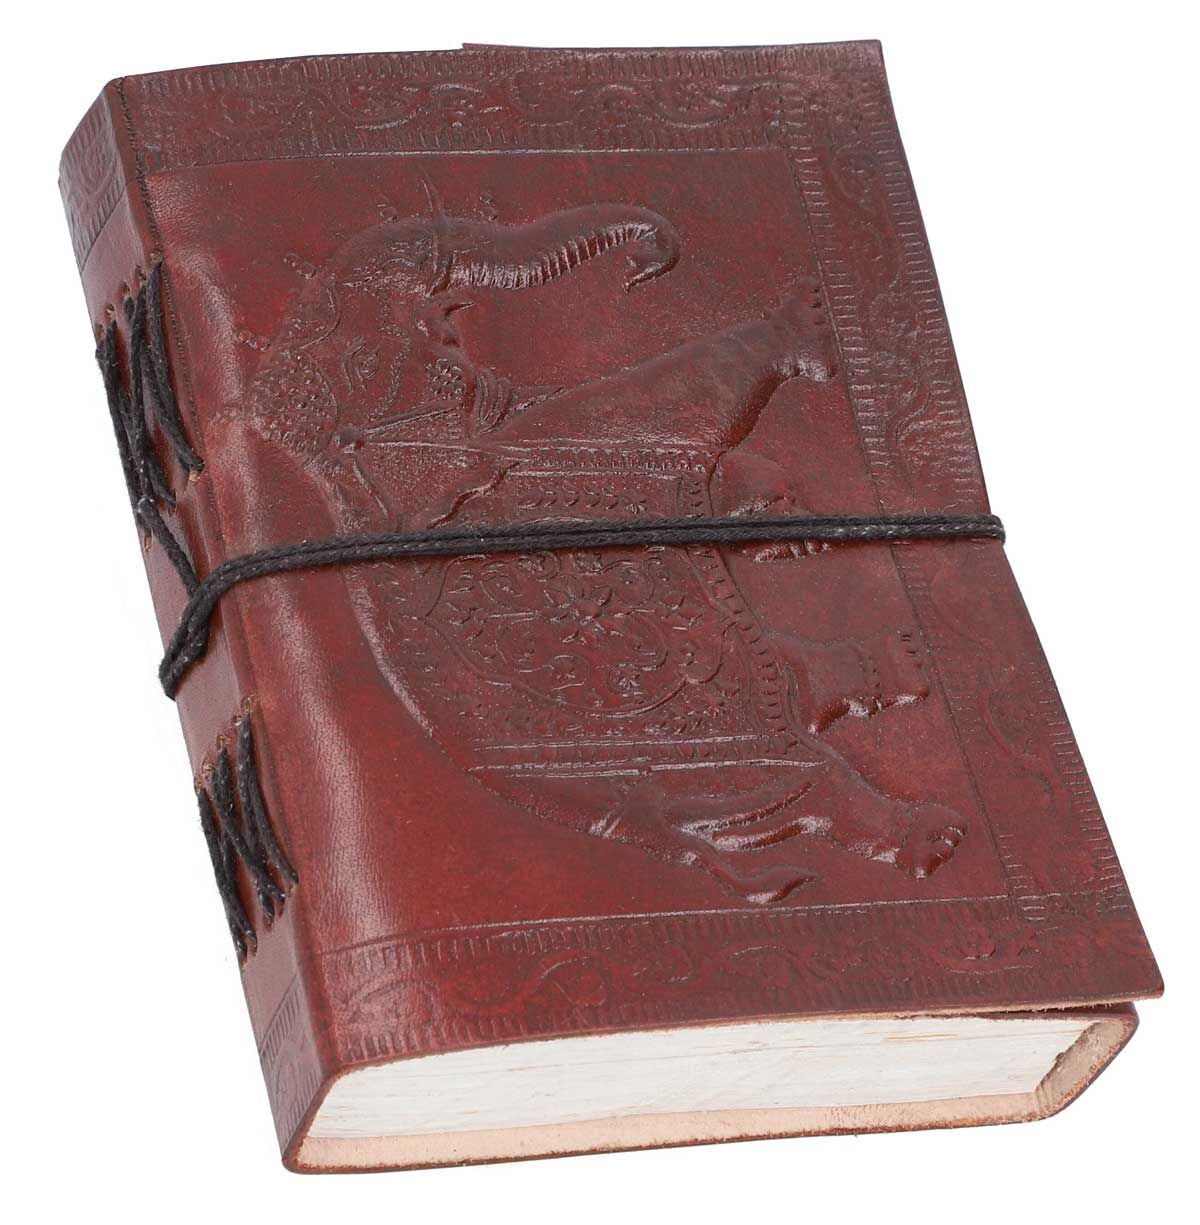 legaal eenvoudig korting boek notitieboek dagboek reisdagboek schetsboek DIN A6 bruin leer met  olifantenmotief - Damara